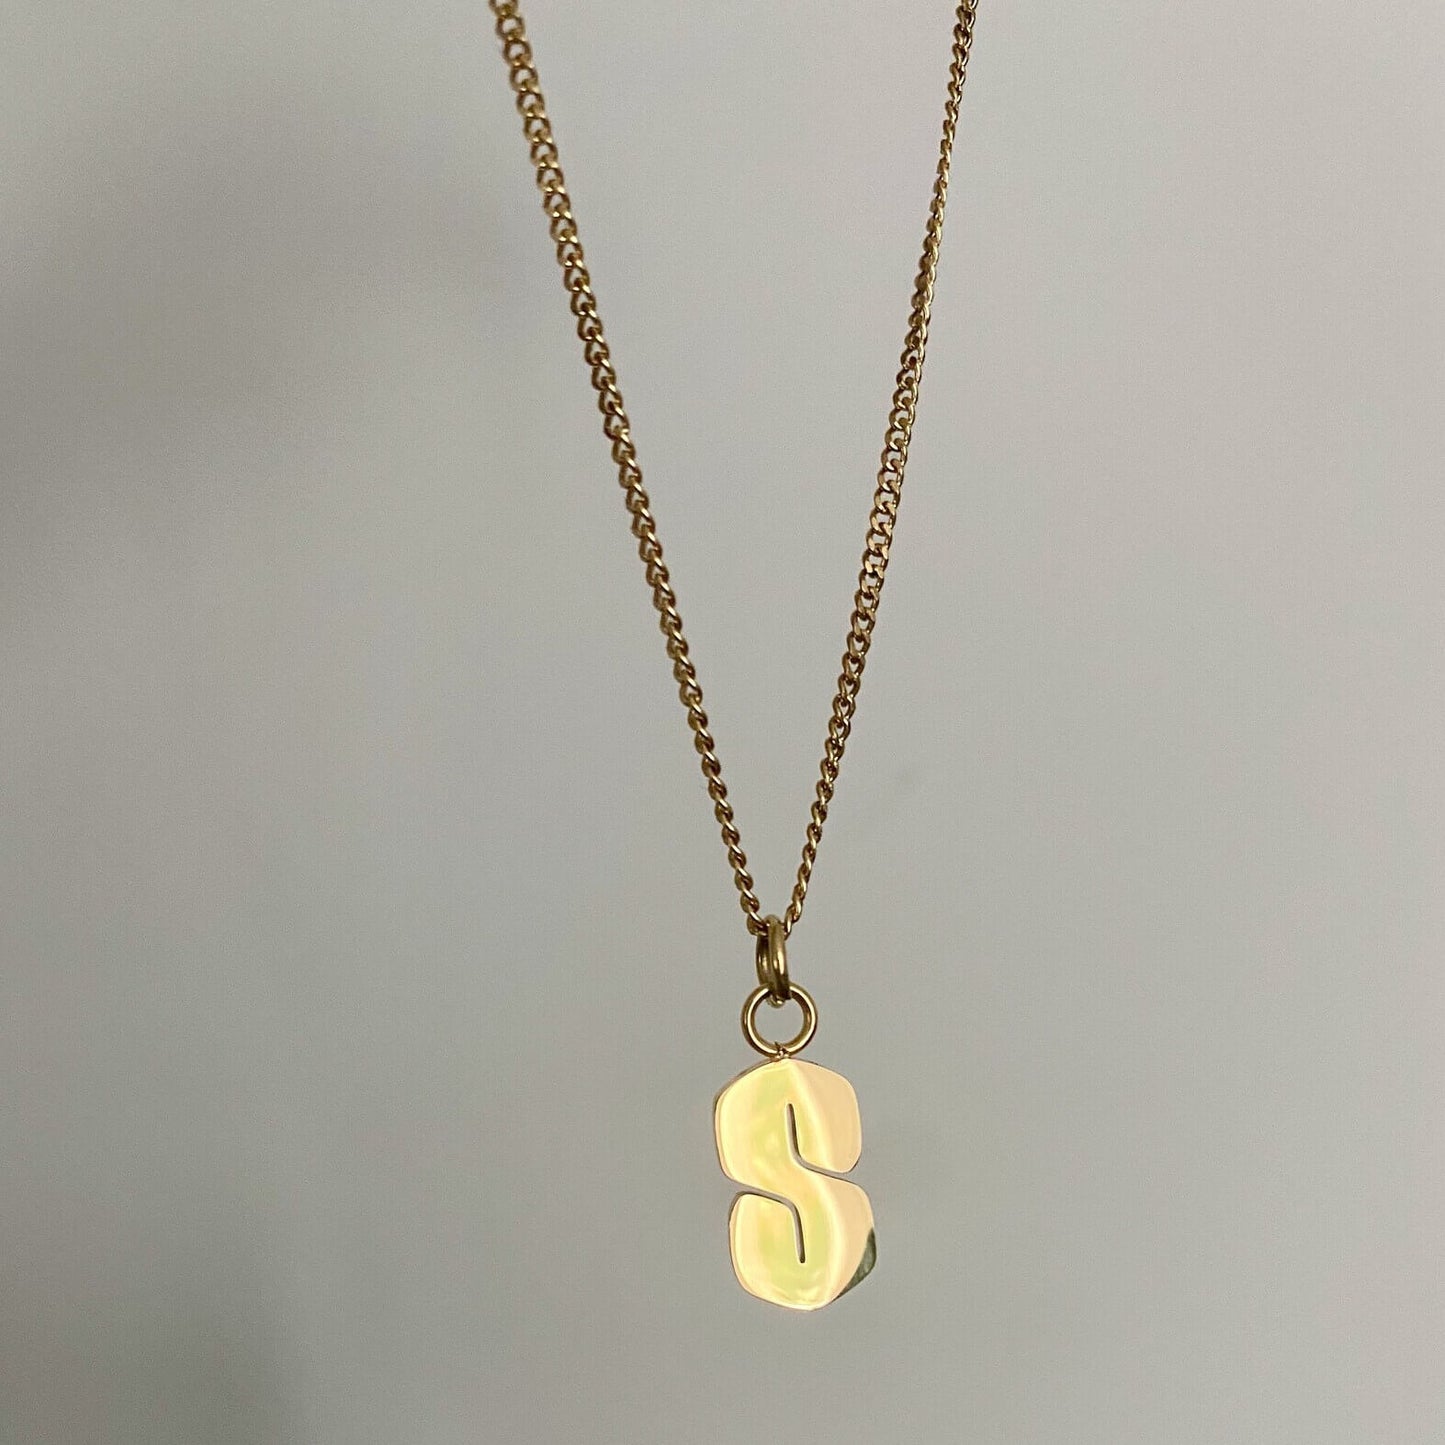 MMNYC.Studio's Mini S Necklace